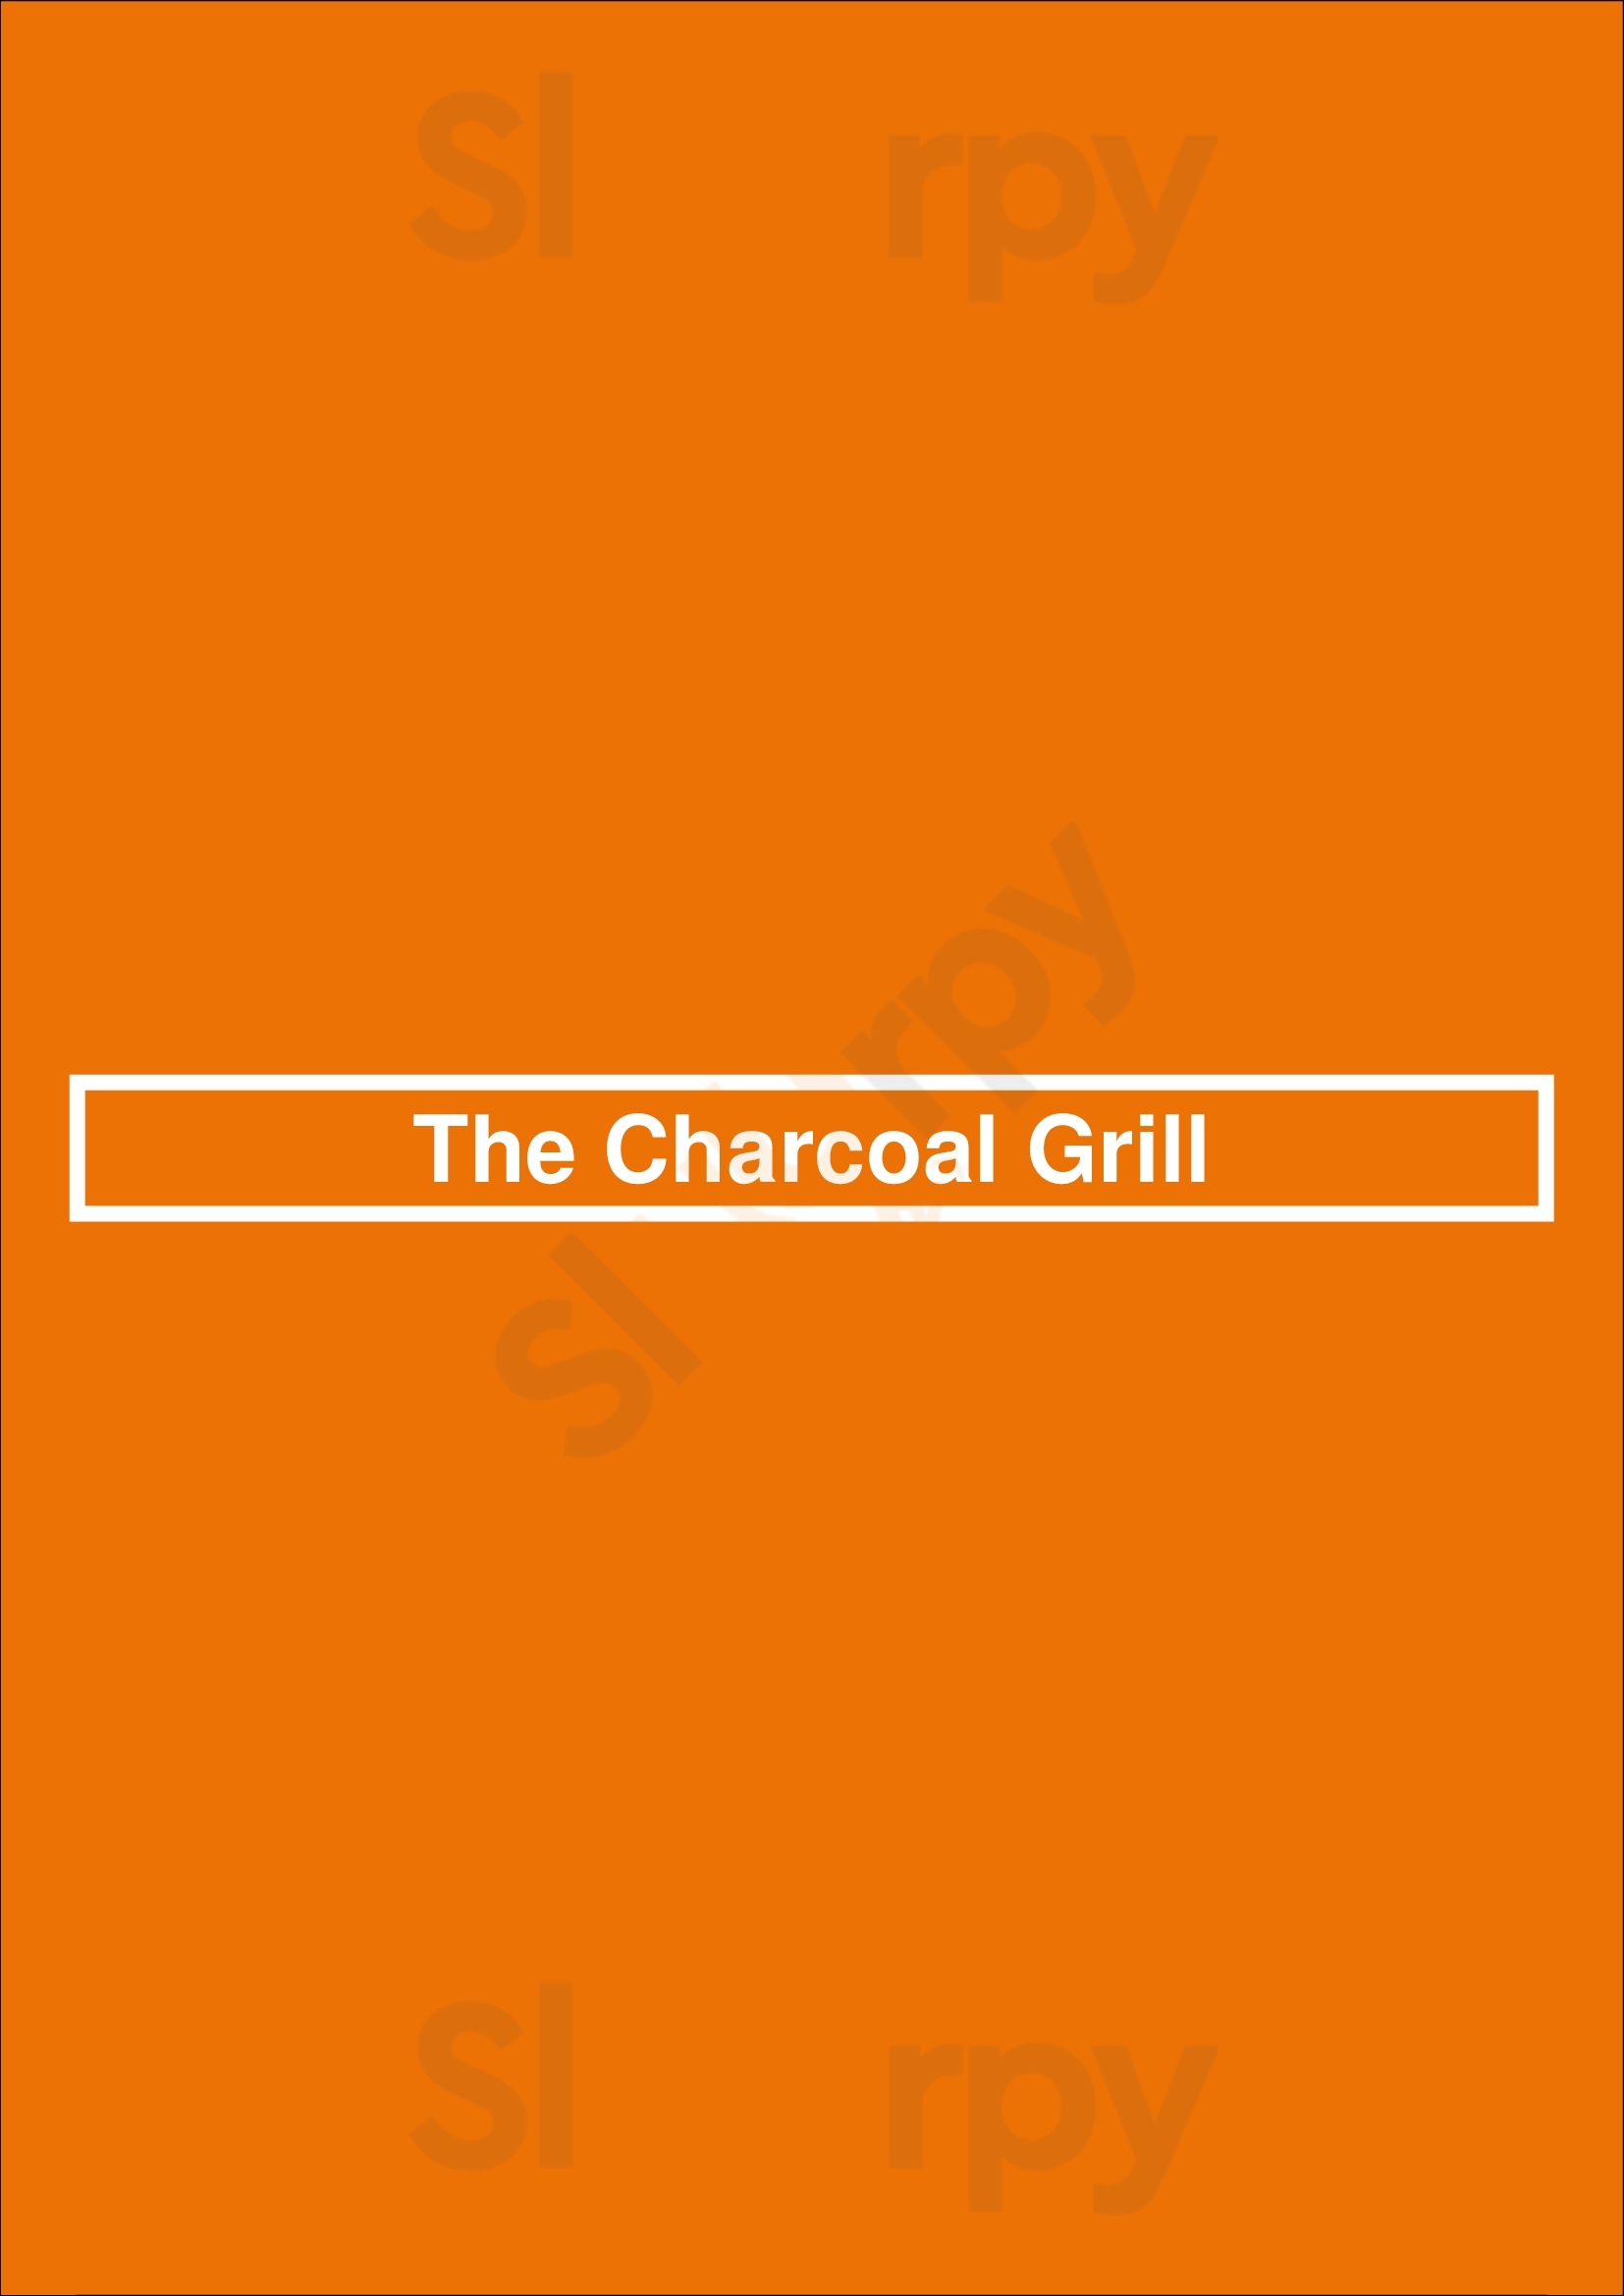 The Charcoal Grill Cambridge Menu - 1